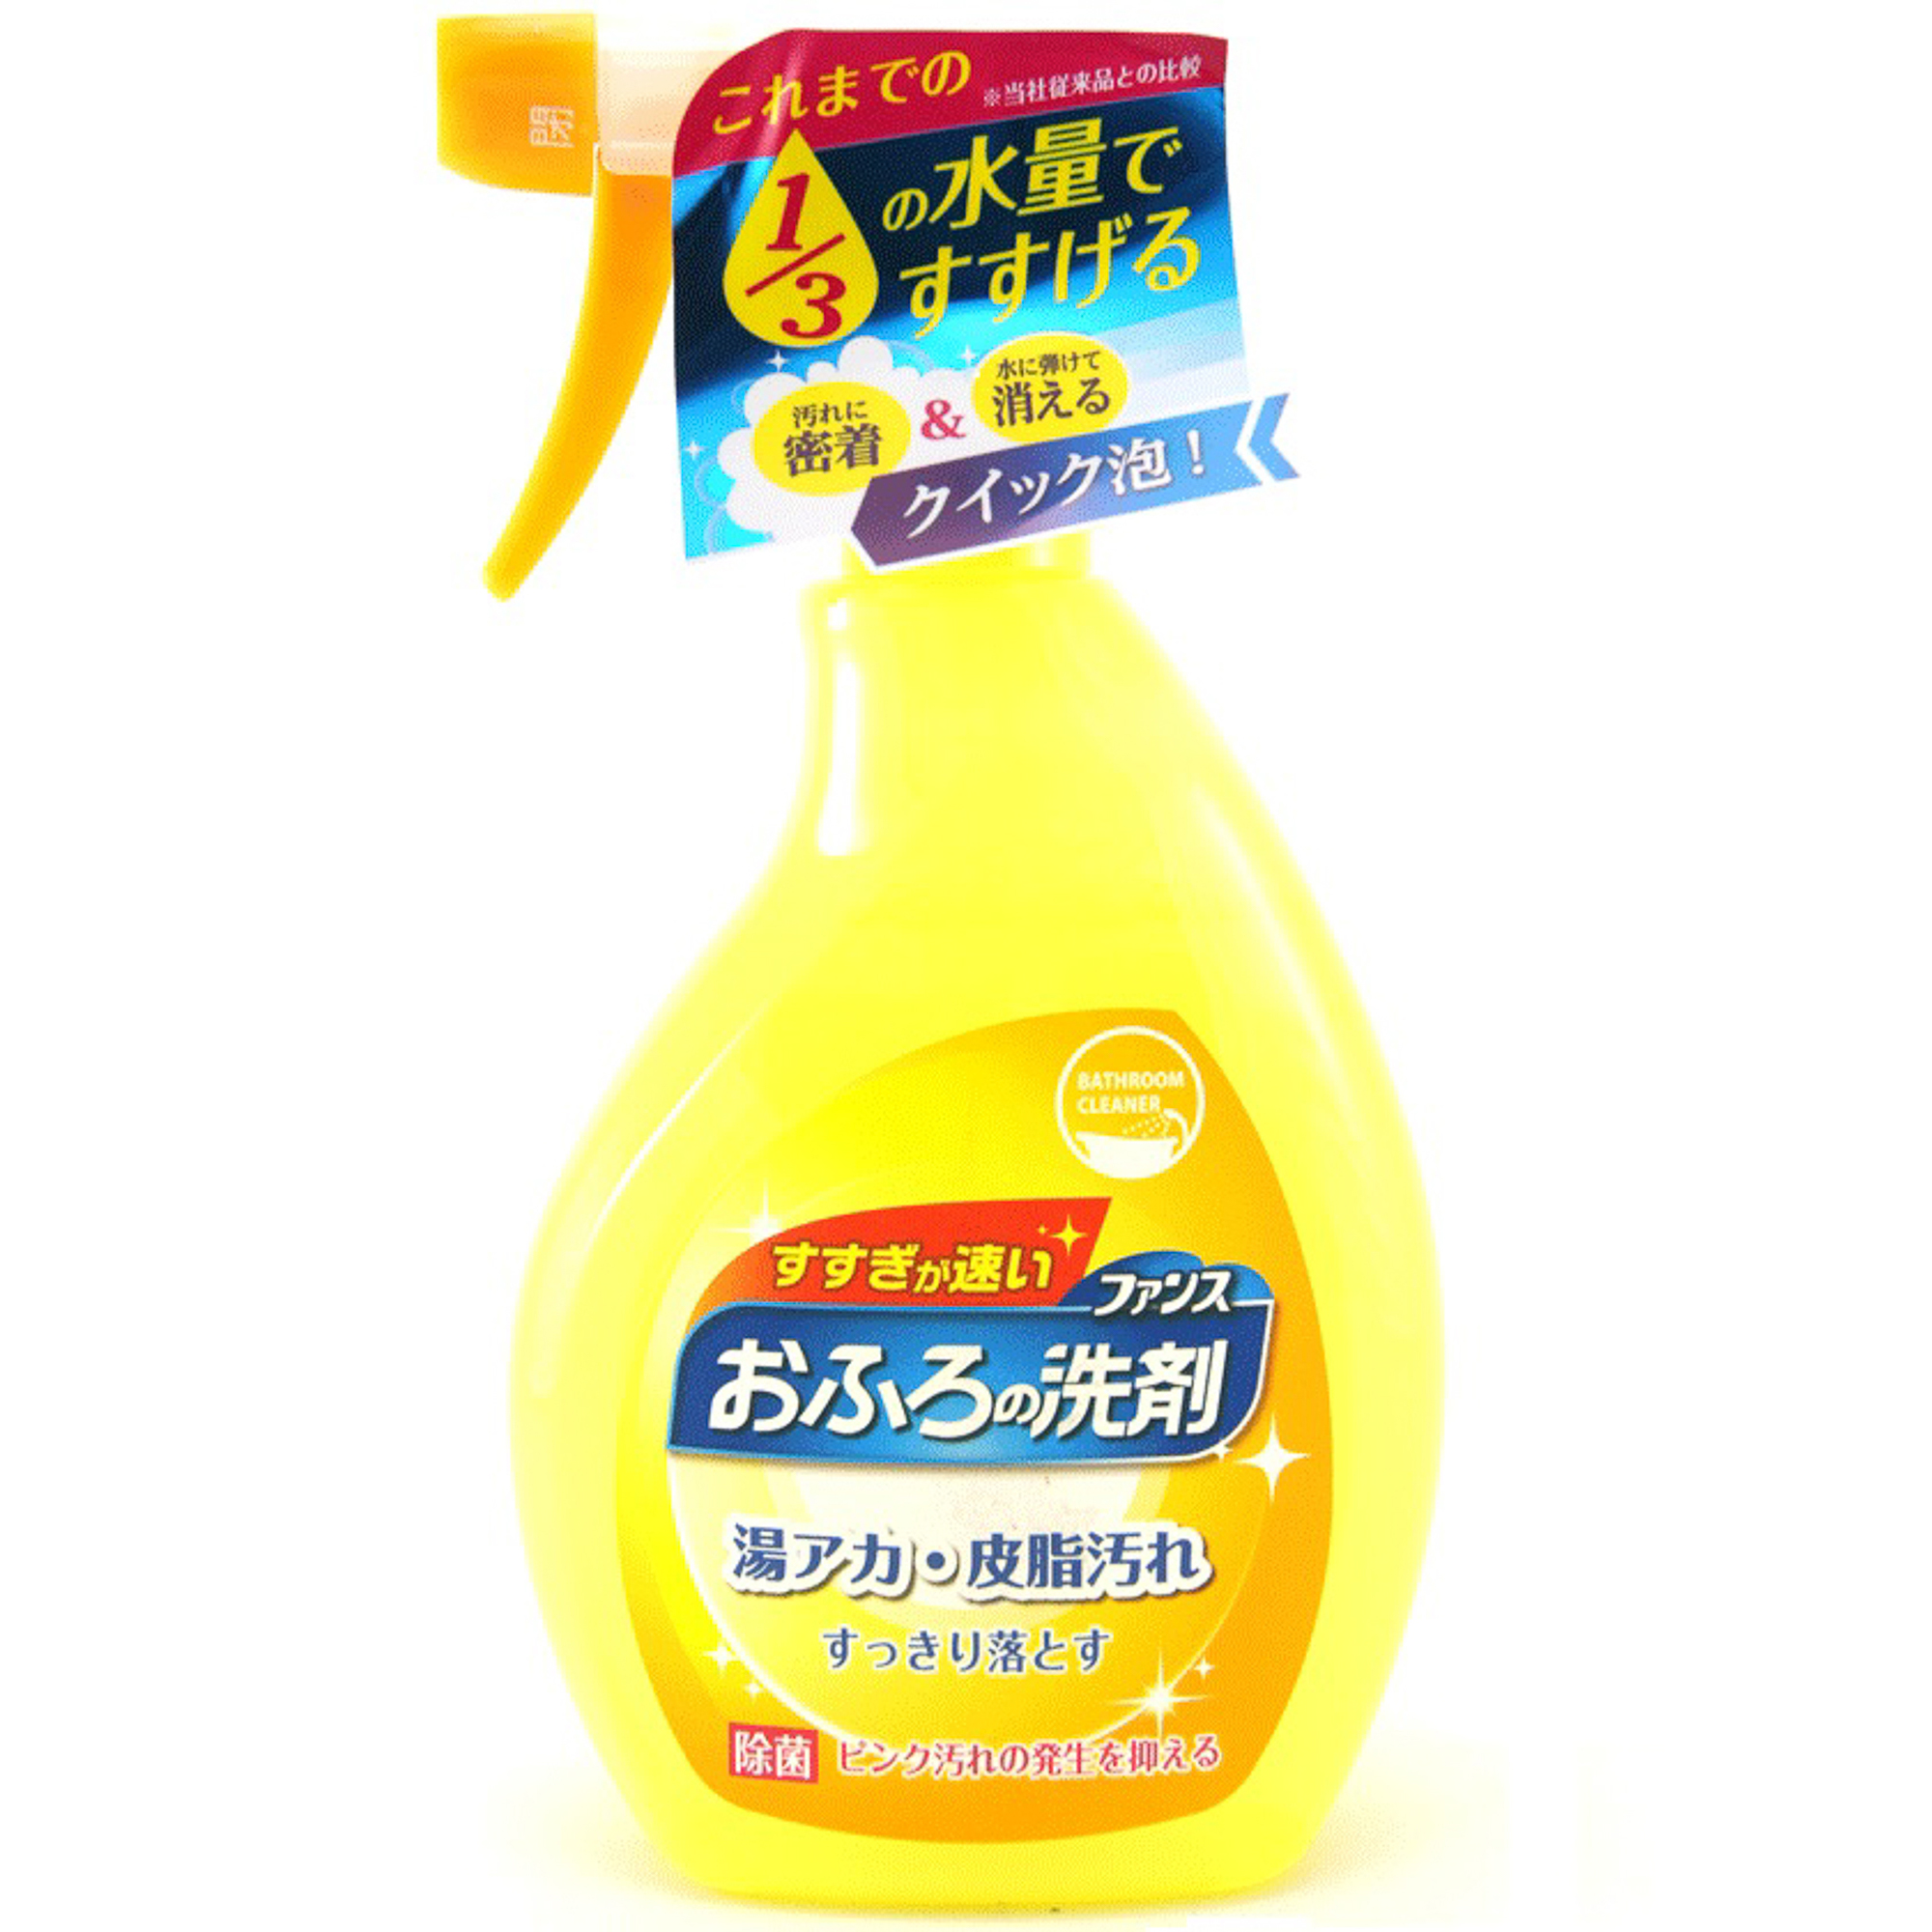 Спрей пенный Daiichi Ofuro для чистки в ванной комнате 380 мл средство для удаления плесени в ванной комнате vash gold